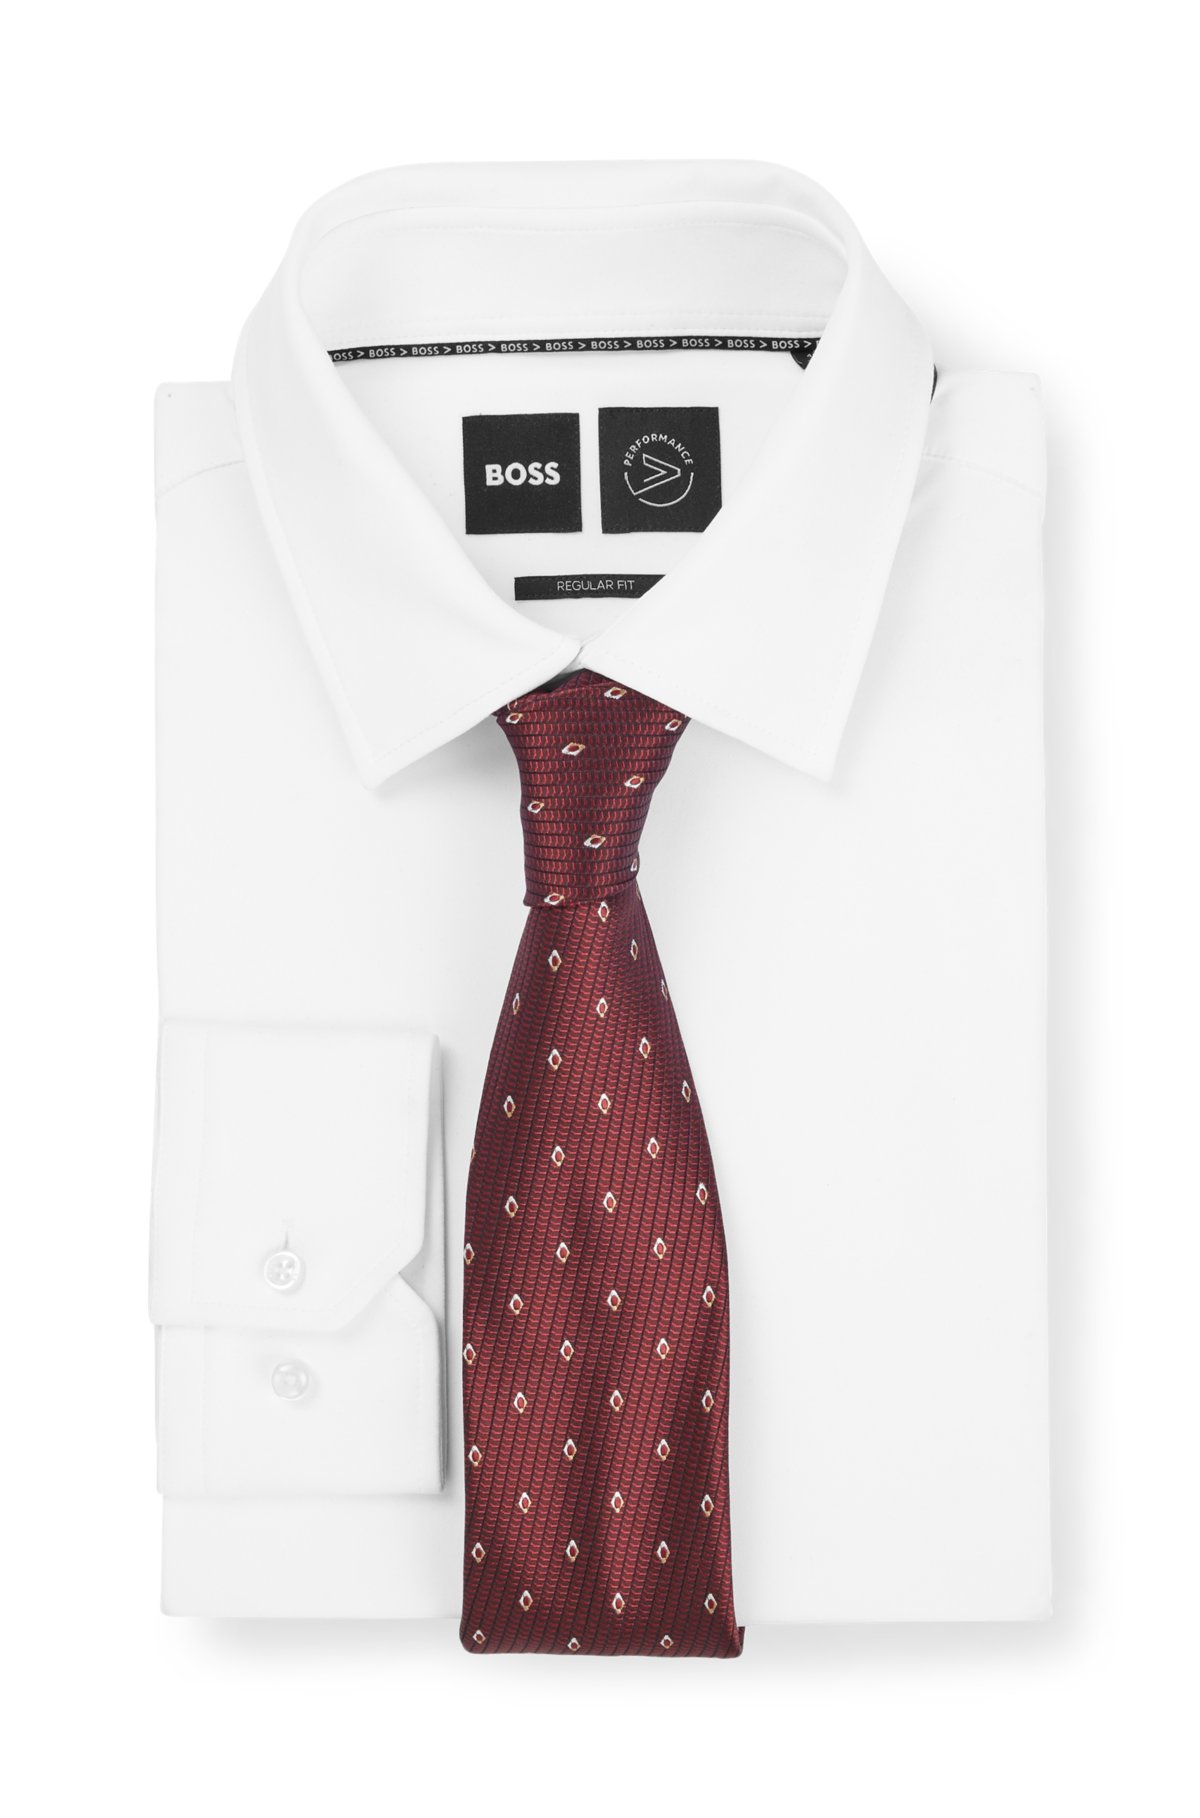 Silk-jacquard tie with modern pattern, Dark Red